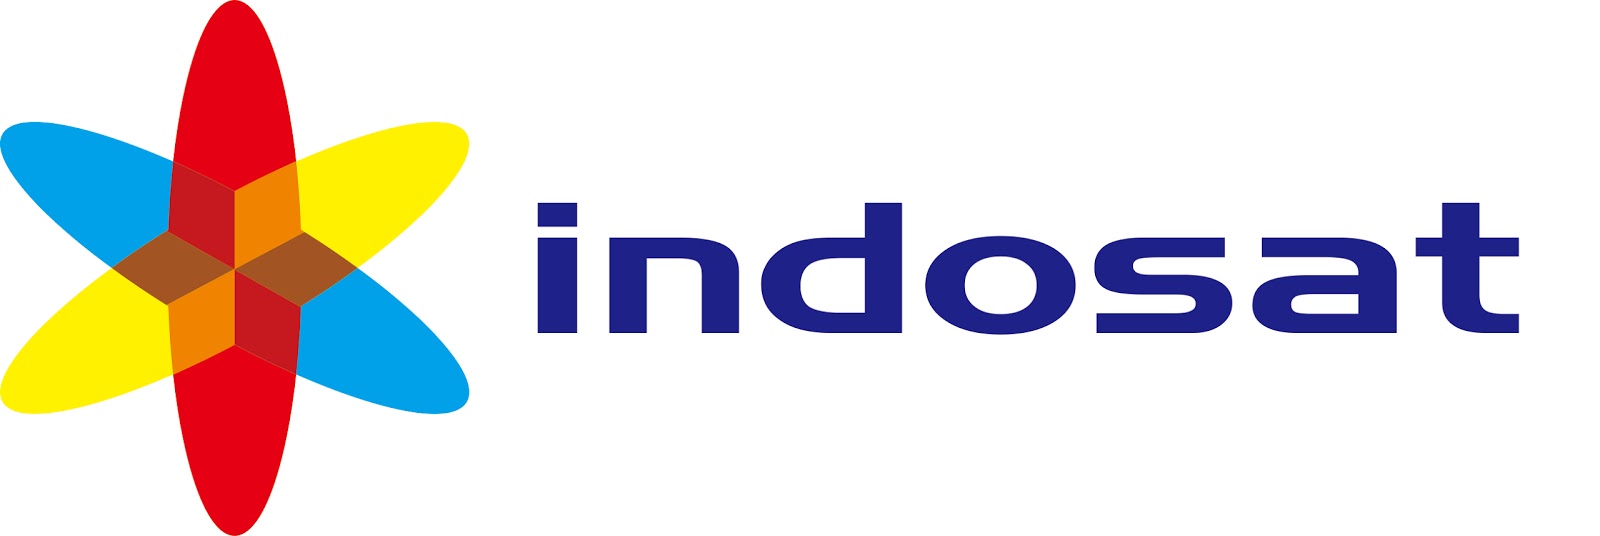 Image Logo Indosat Download  Free HD Wallpapers